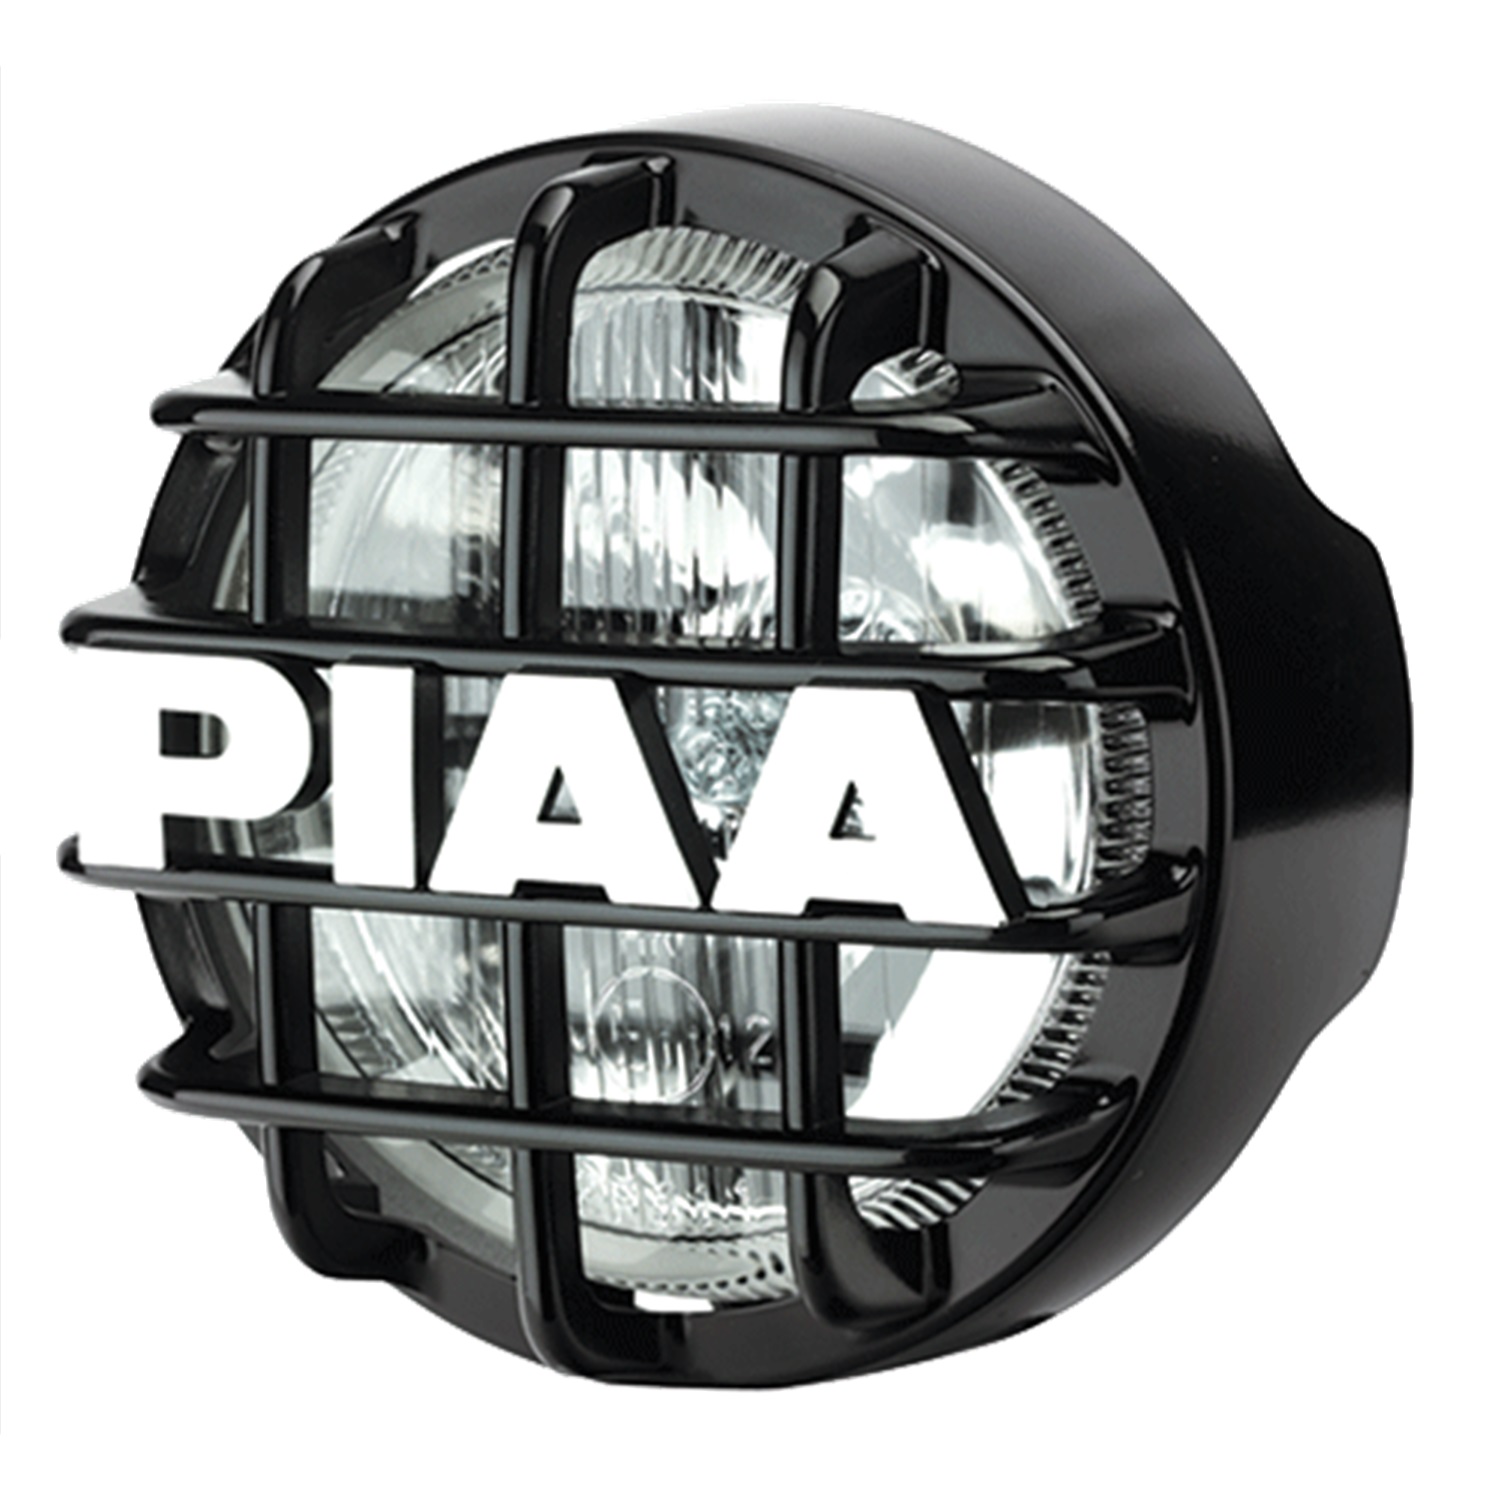 PIAA PIAA 5106 510 Intense White All Terrain Pattern Auxiliary Lamp